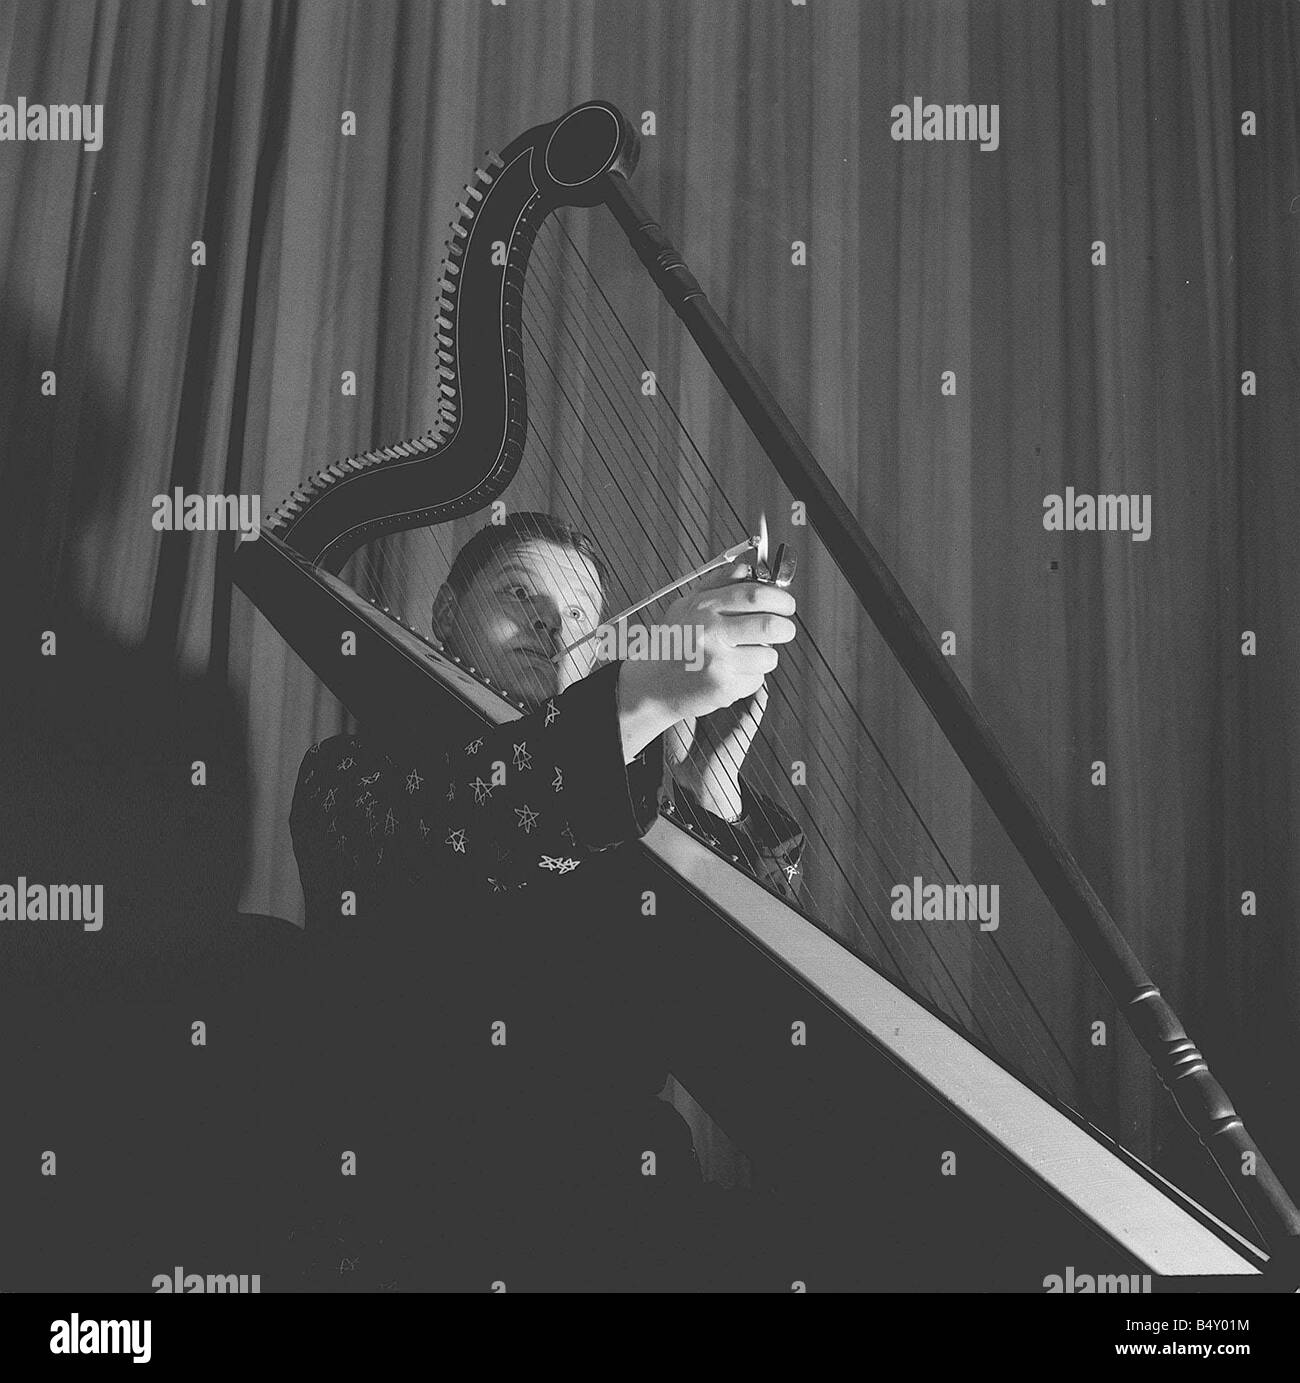 Harpe jouant Benny Hill 20 6 62 Q1526 Case 25 Le comédien enny Hill de l'affichage d'une façon plutôt originale de profiter d'une ciggarette tout en jouant de la harpe Y2K2 dtgu la renommée le 21 janvier marque l'anniversaire de la naissance de l'humoriste britannique Alfred Hill mieux connu sous le nom de Benny Hill il est apparu dans la comédie revues sur scène à la radio et en 1949 sur l'émission de télévision Salut en 1955 il a commencé le Benny Hill Show avec des sketches et des chansons de la butée et poitrine school d'humour anglais Hill semble aussi occasionnellement dans des films comme Chitty Chitty Bang Bang dans les années 1970, Le Benny Hill Show a à Banque D'Images